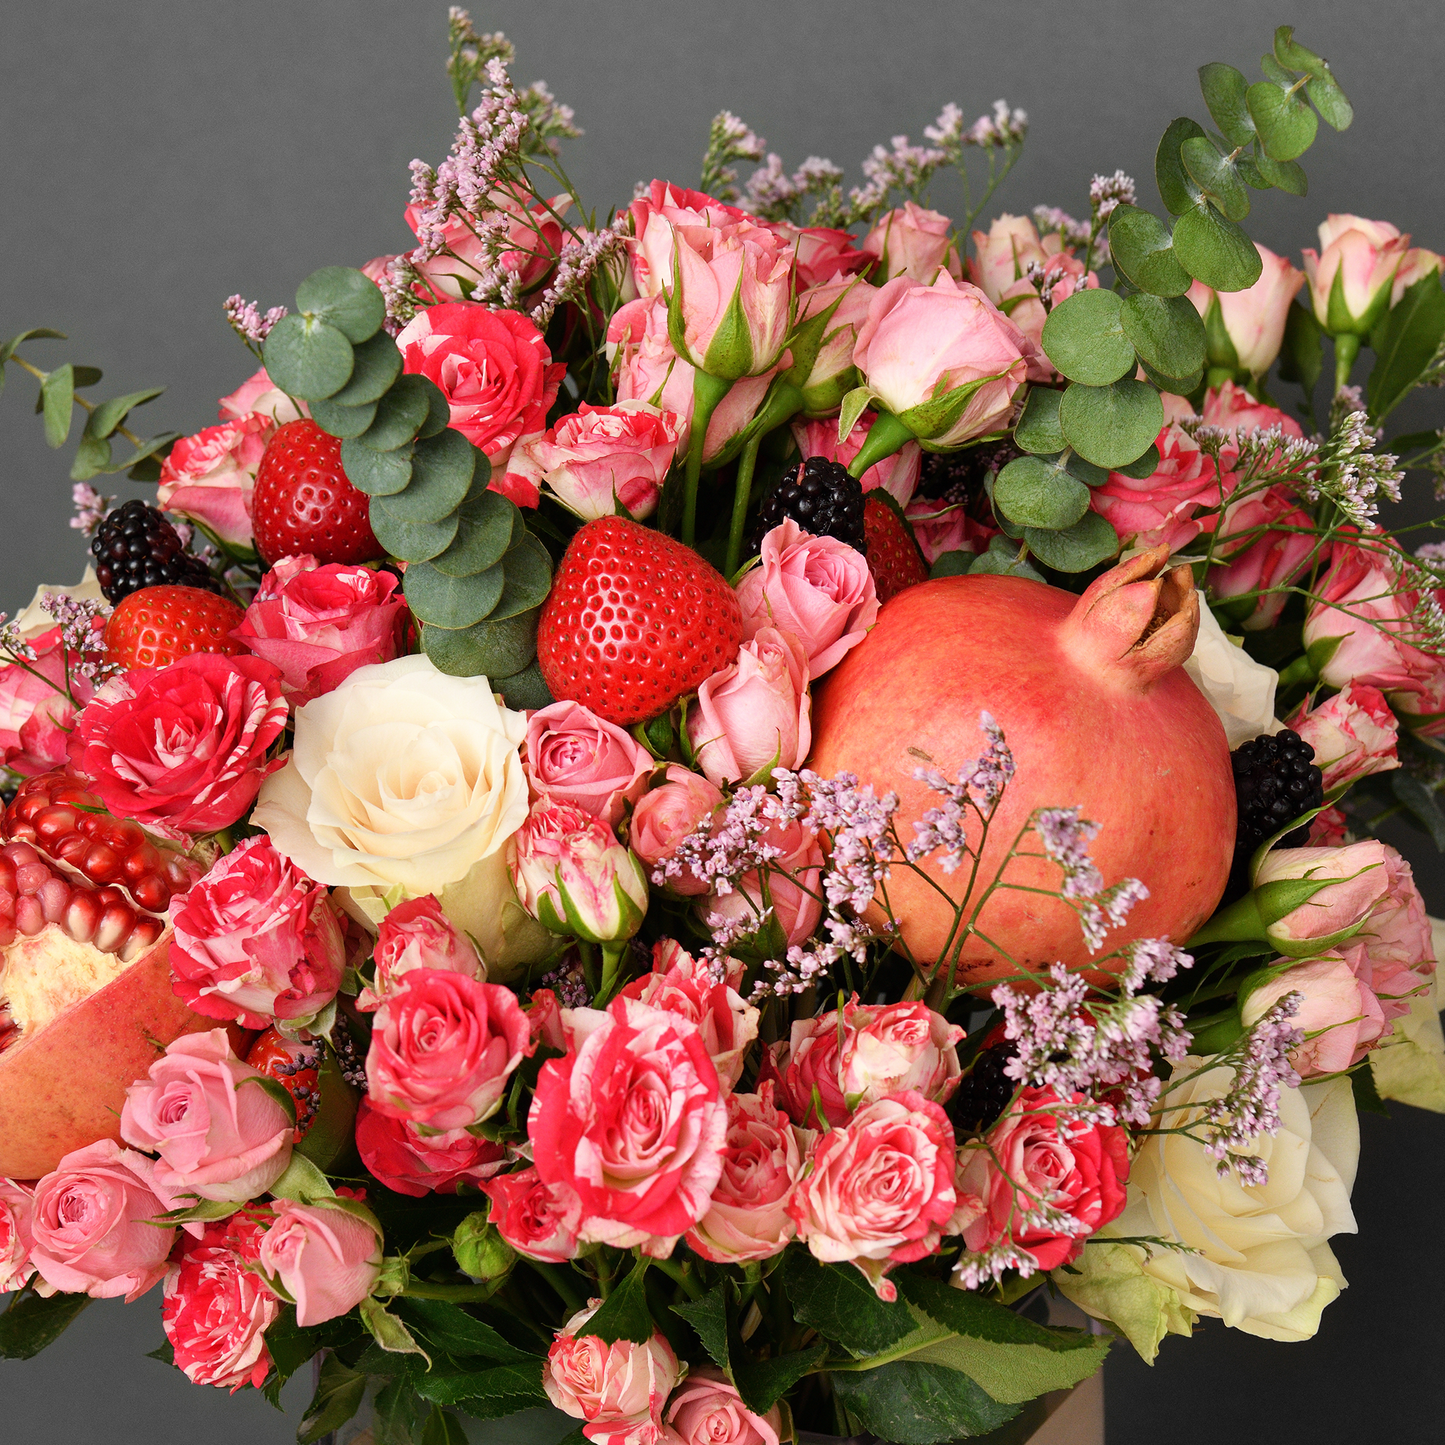 fruit and flower arrangements